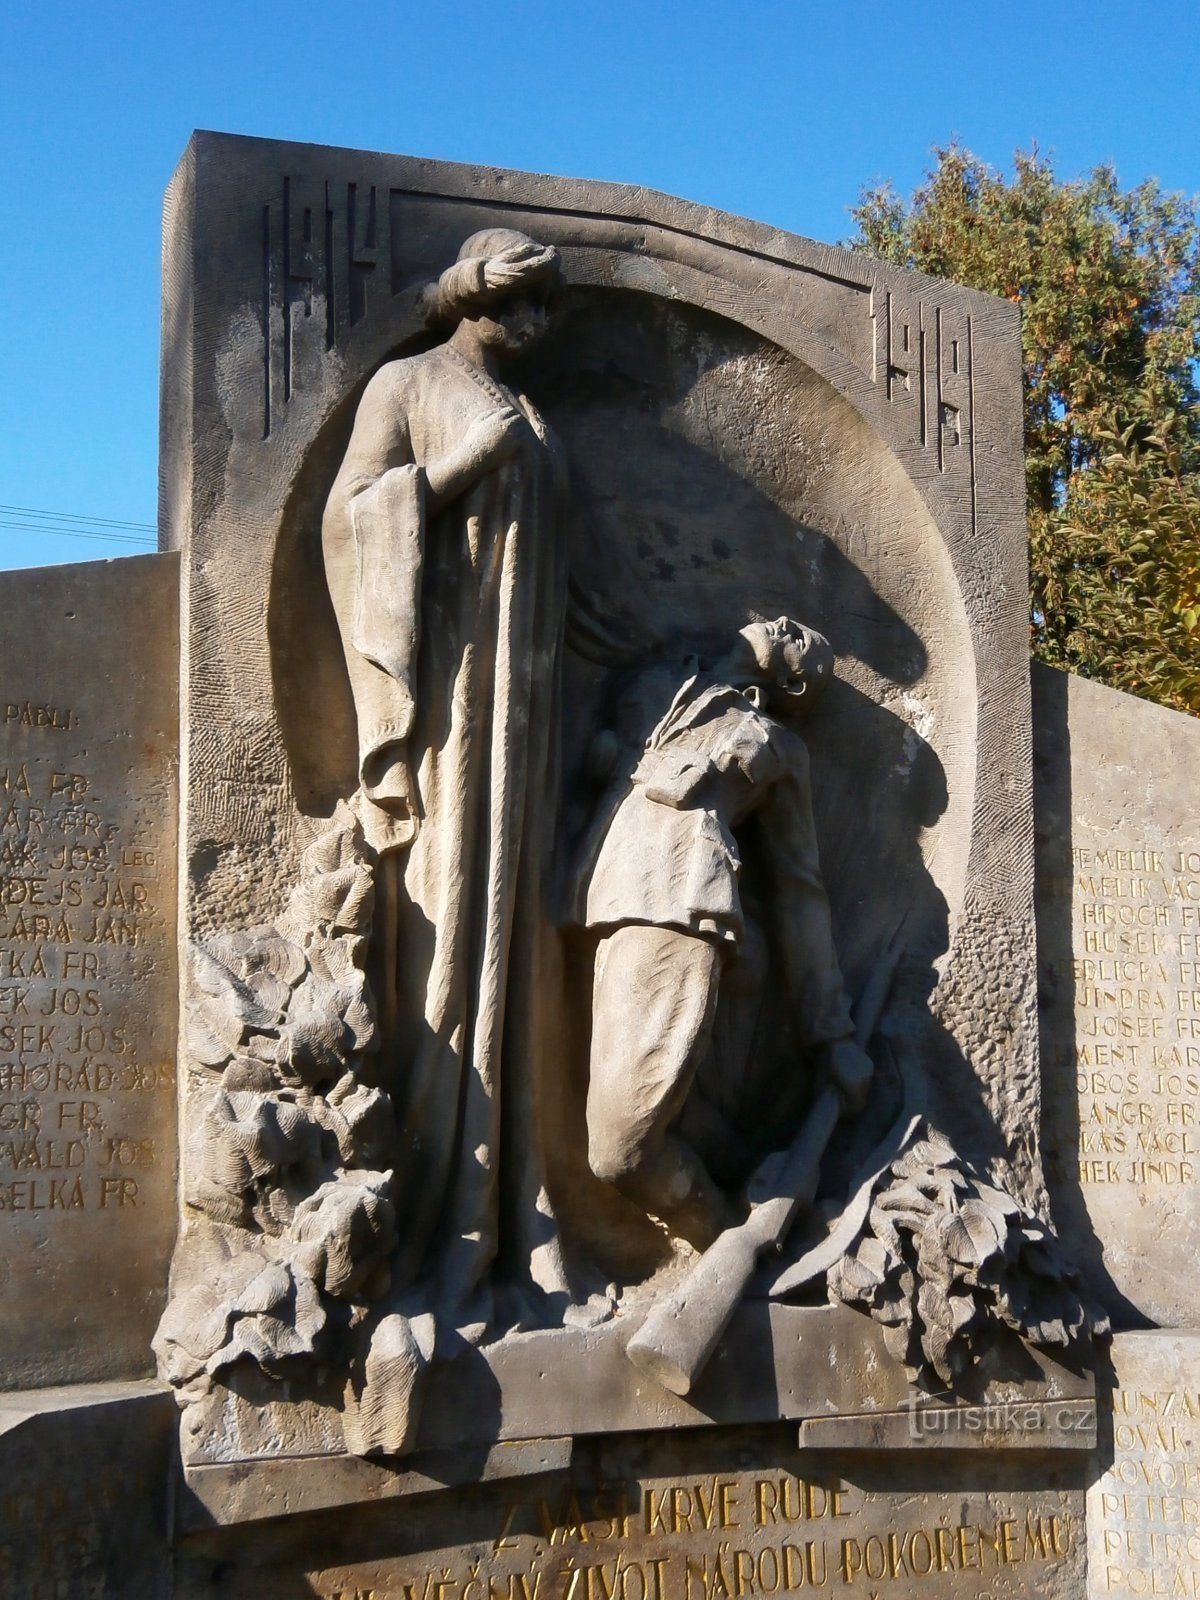 Пам'ятник загиблим у Першій світовій війні в Нове Градец Кралове (Градец Кралове, 1)